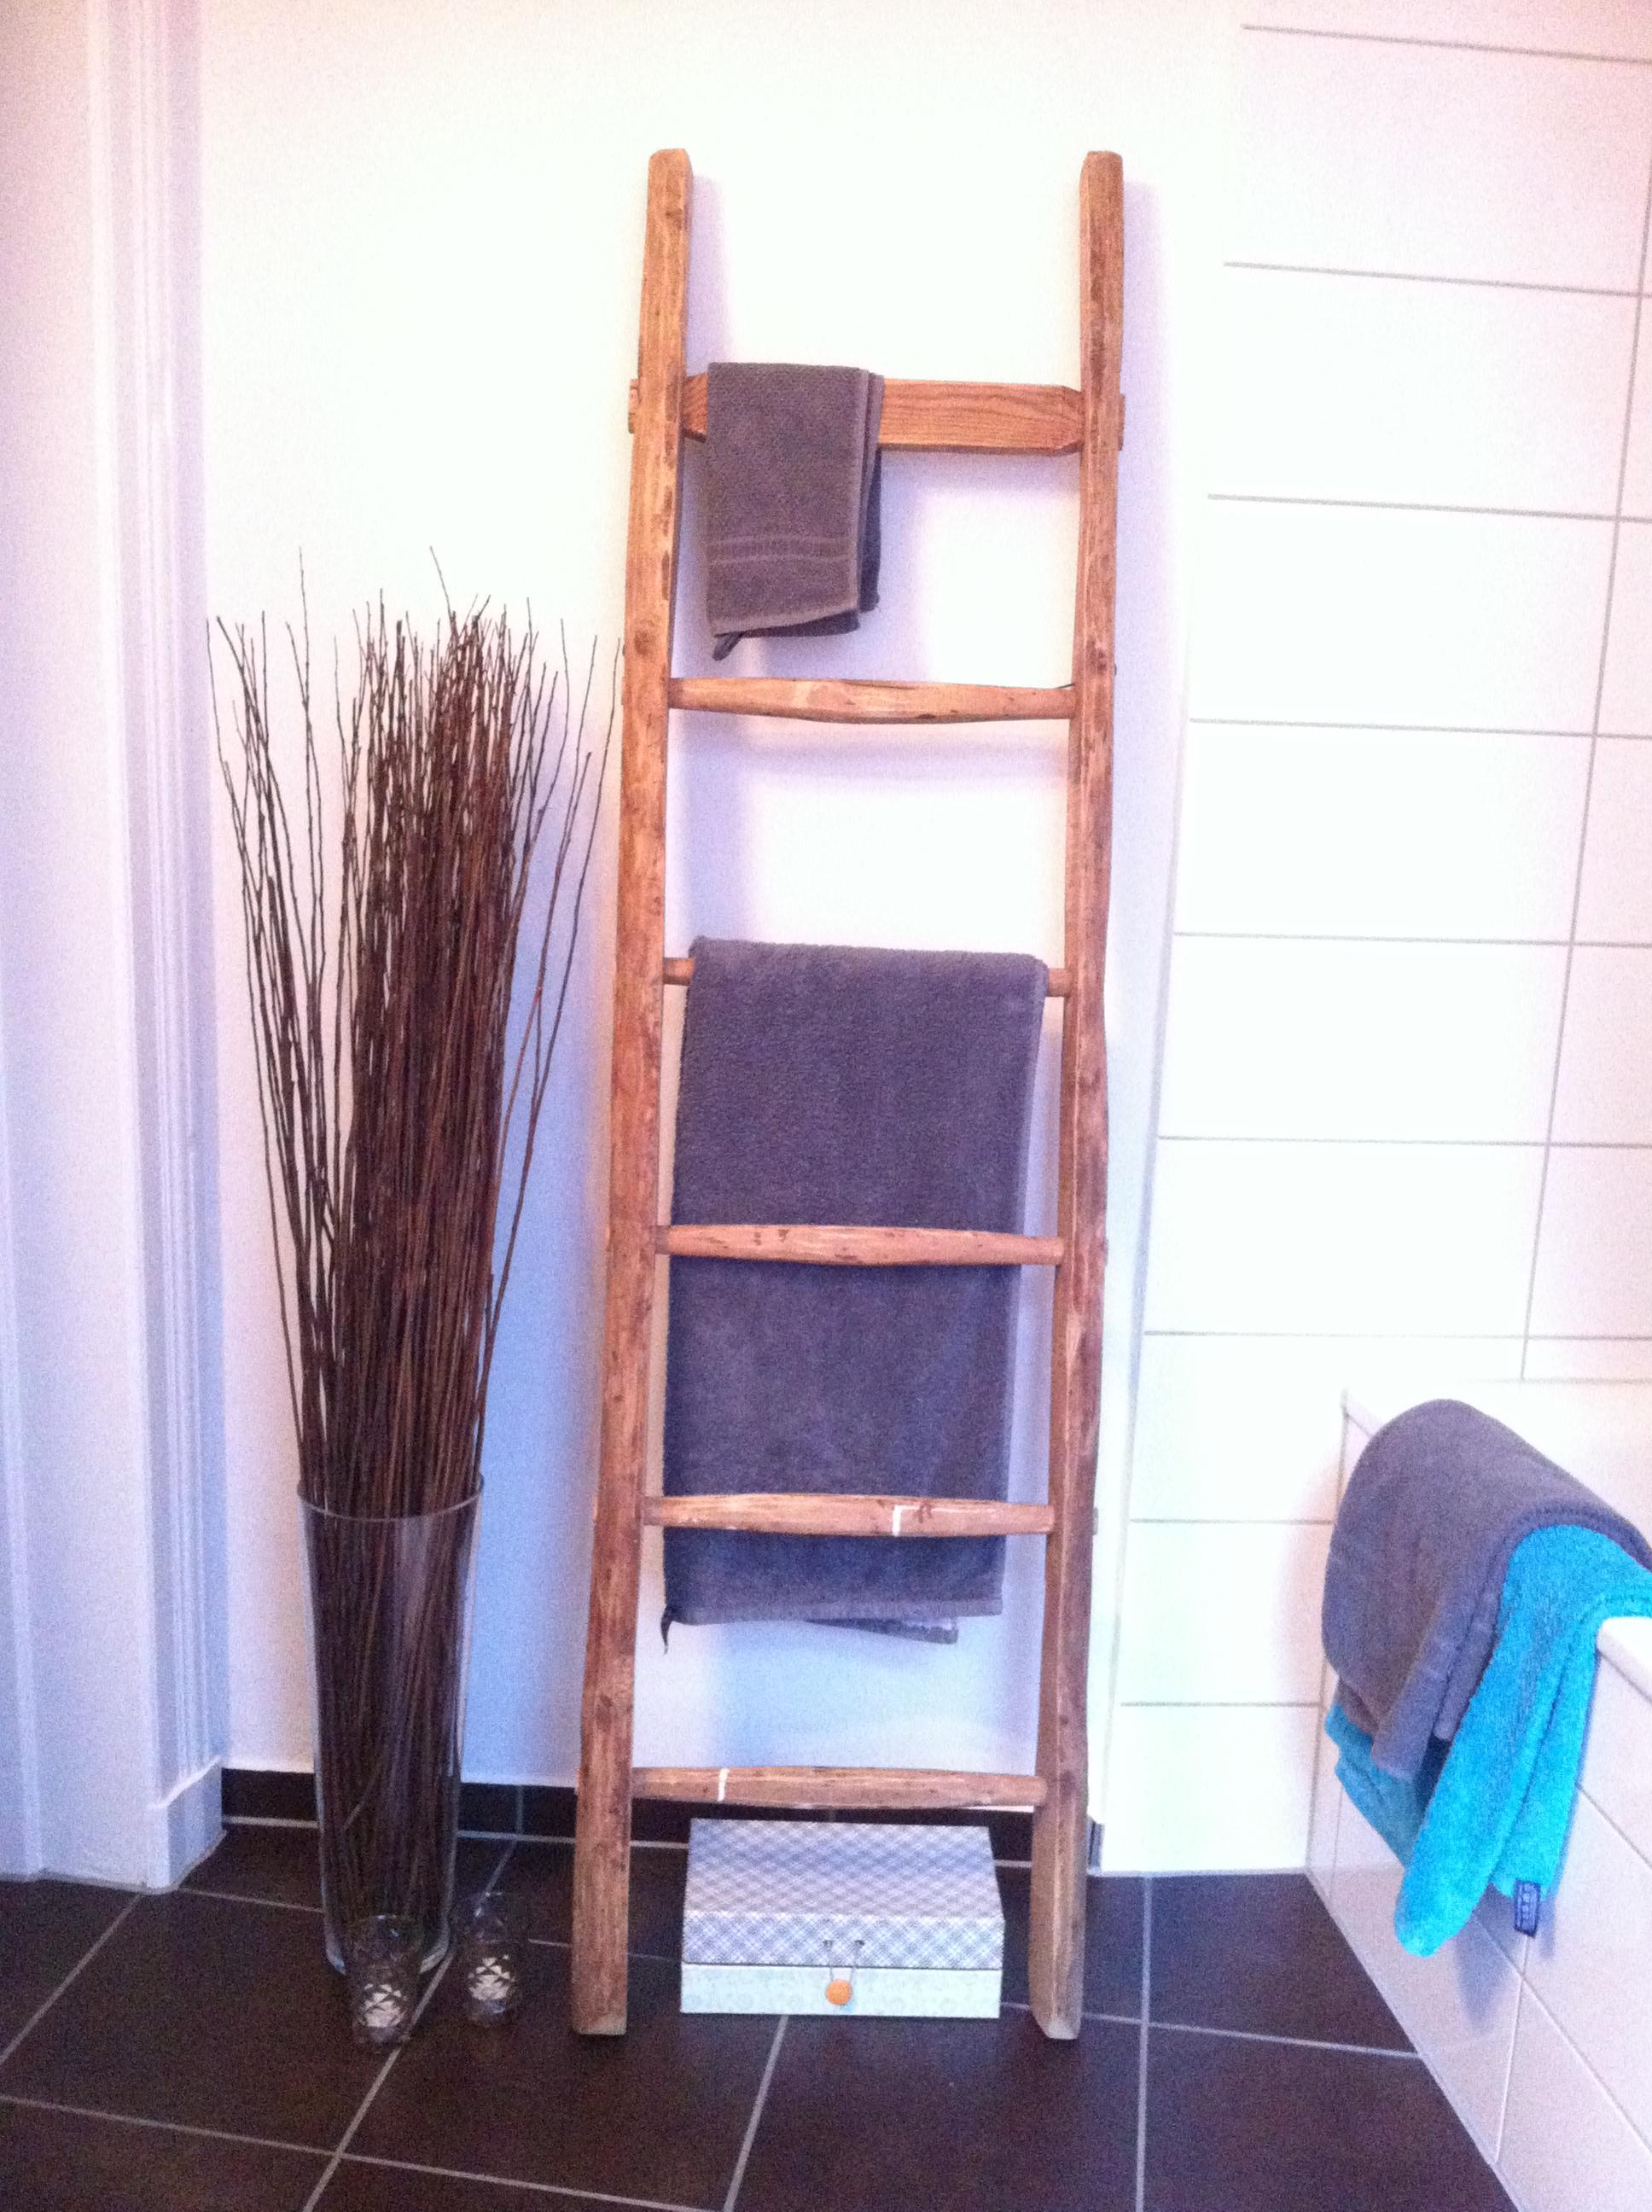 DIY aus einer alten Leiter! #leitergarderobe #handtuchaufbewahrung #diy #recyclingmöbel #alteleiter #bodenbelagbadezimmer #badezimmerfarben